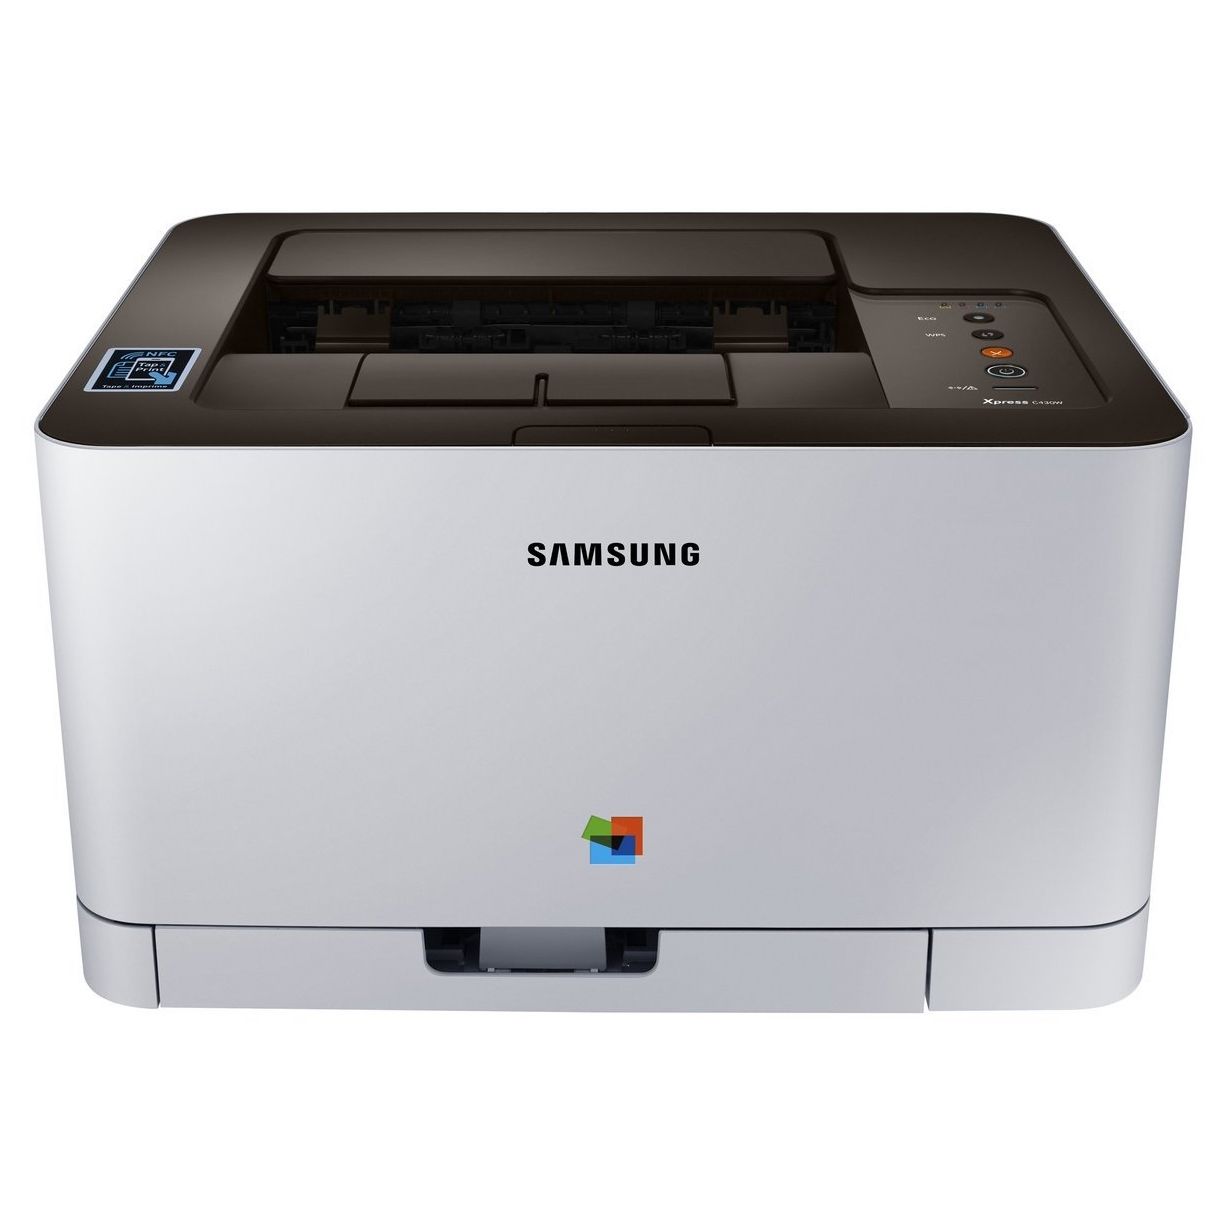  Imprimanta laser color Samsung SL-C430/SEE, A4 